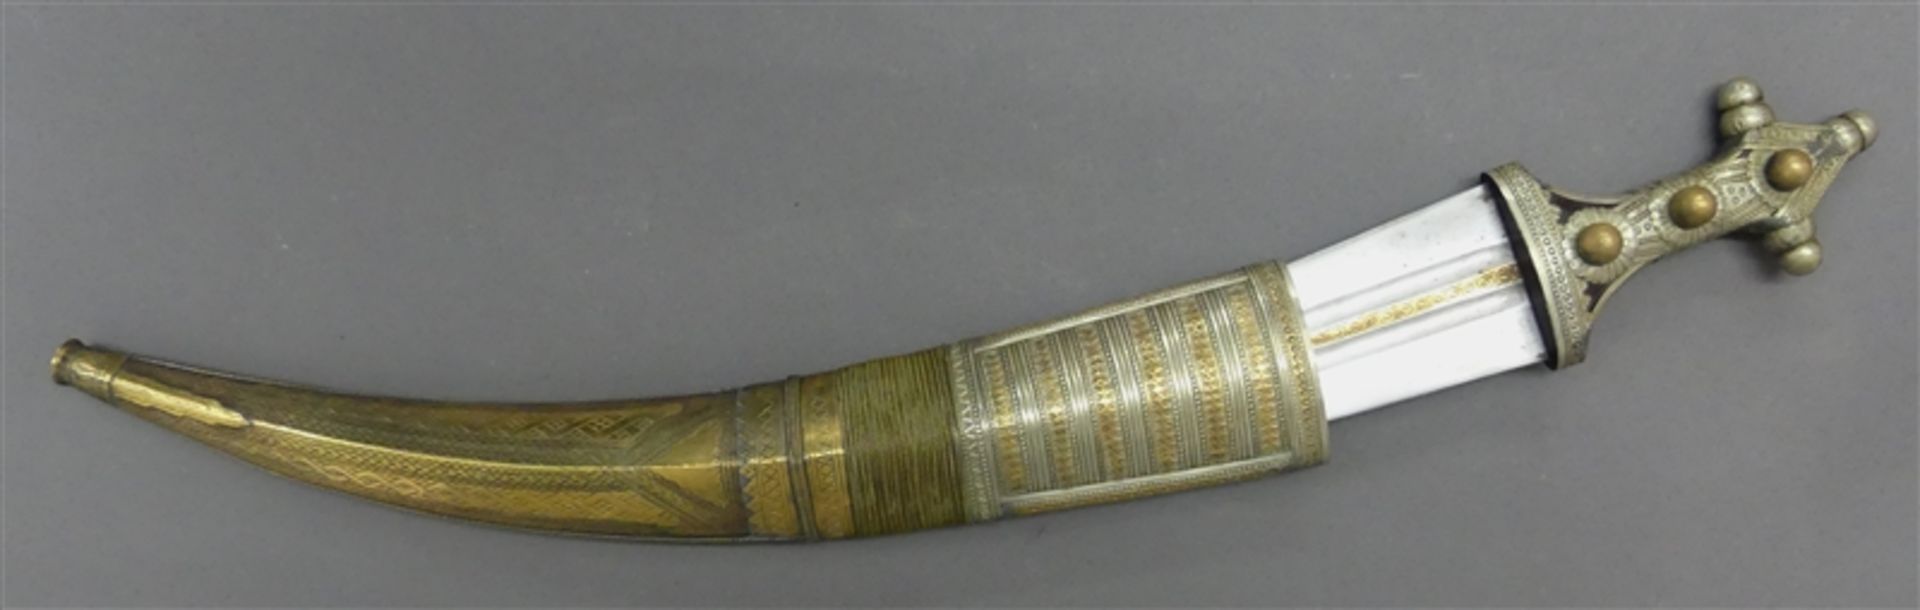 Prunkdolch wohl Saudi Arabien, um 1900, reiche Metallmontur, l 57 cm,